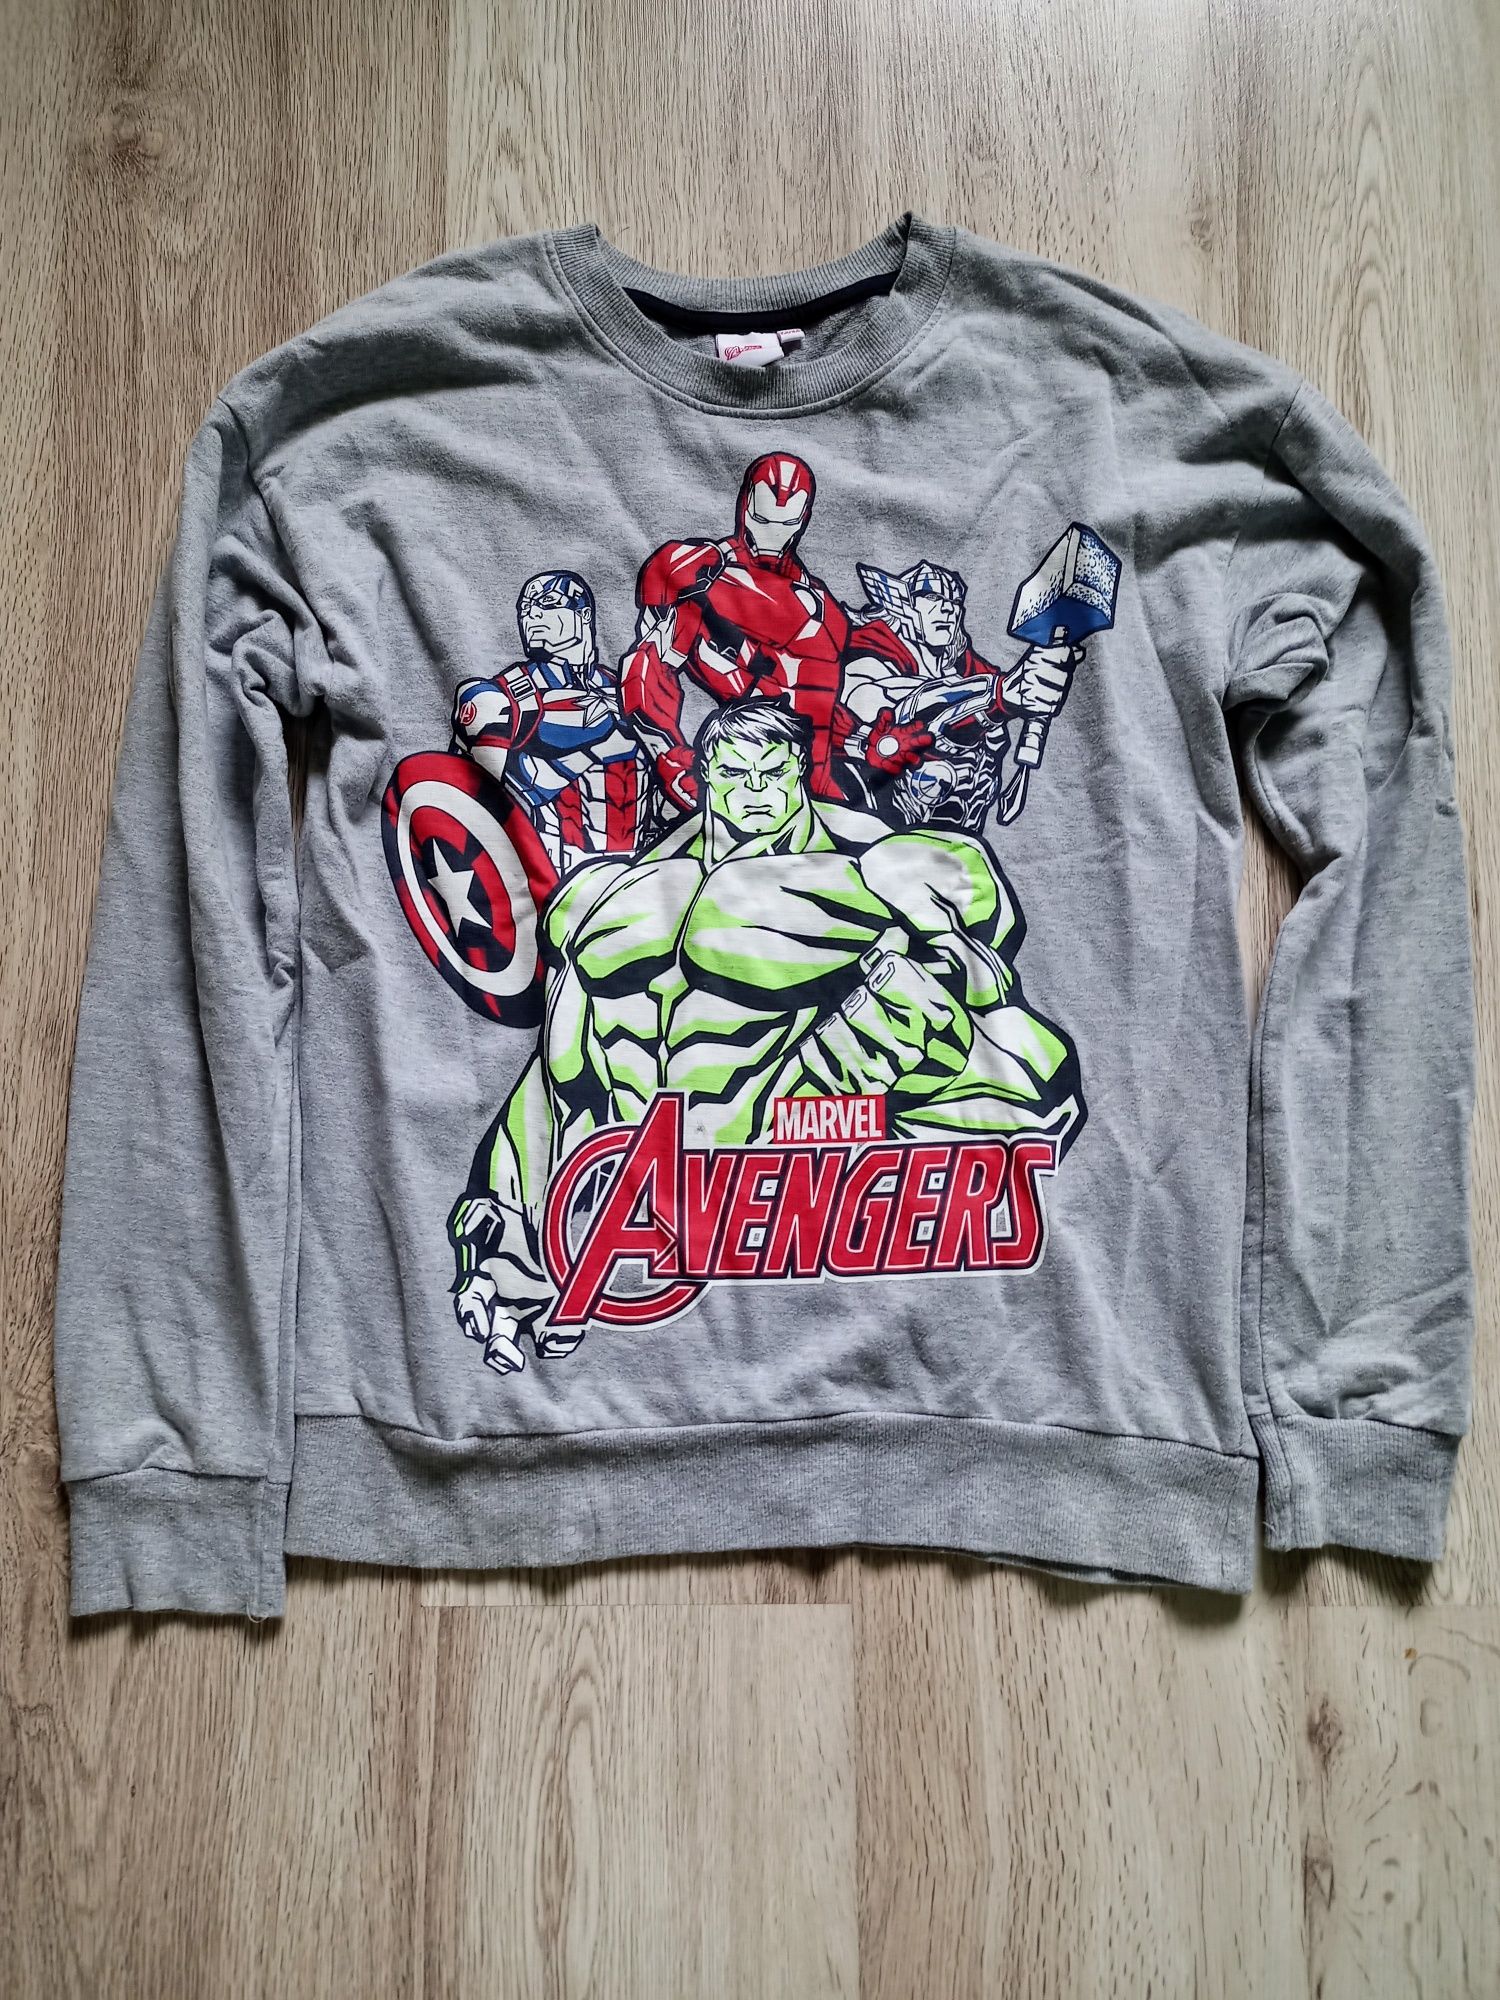 Bluza dla chłopca. Marvel Avengers. Rozmiar 158/164